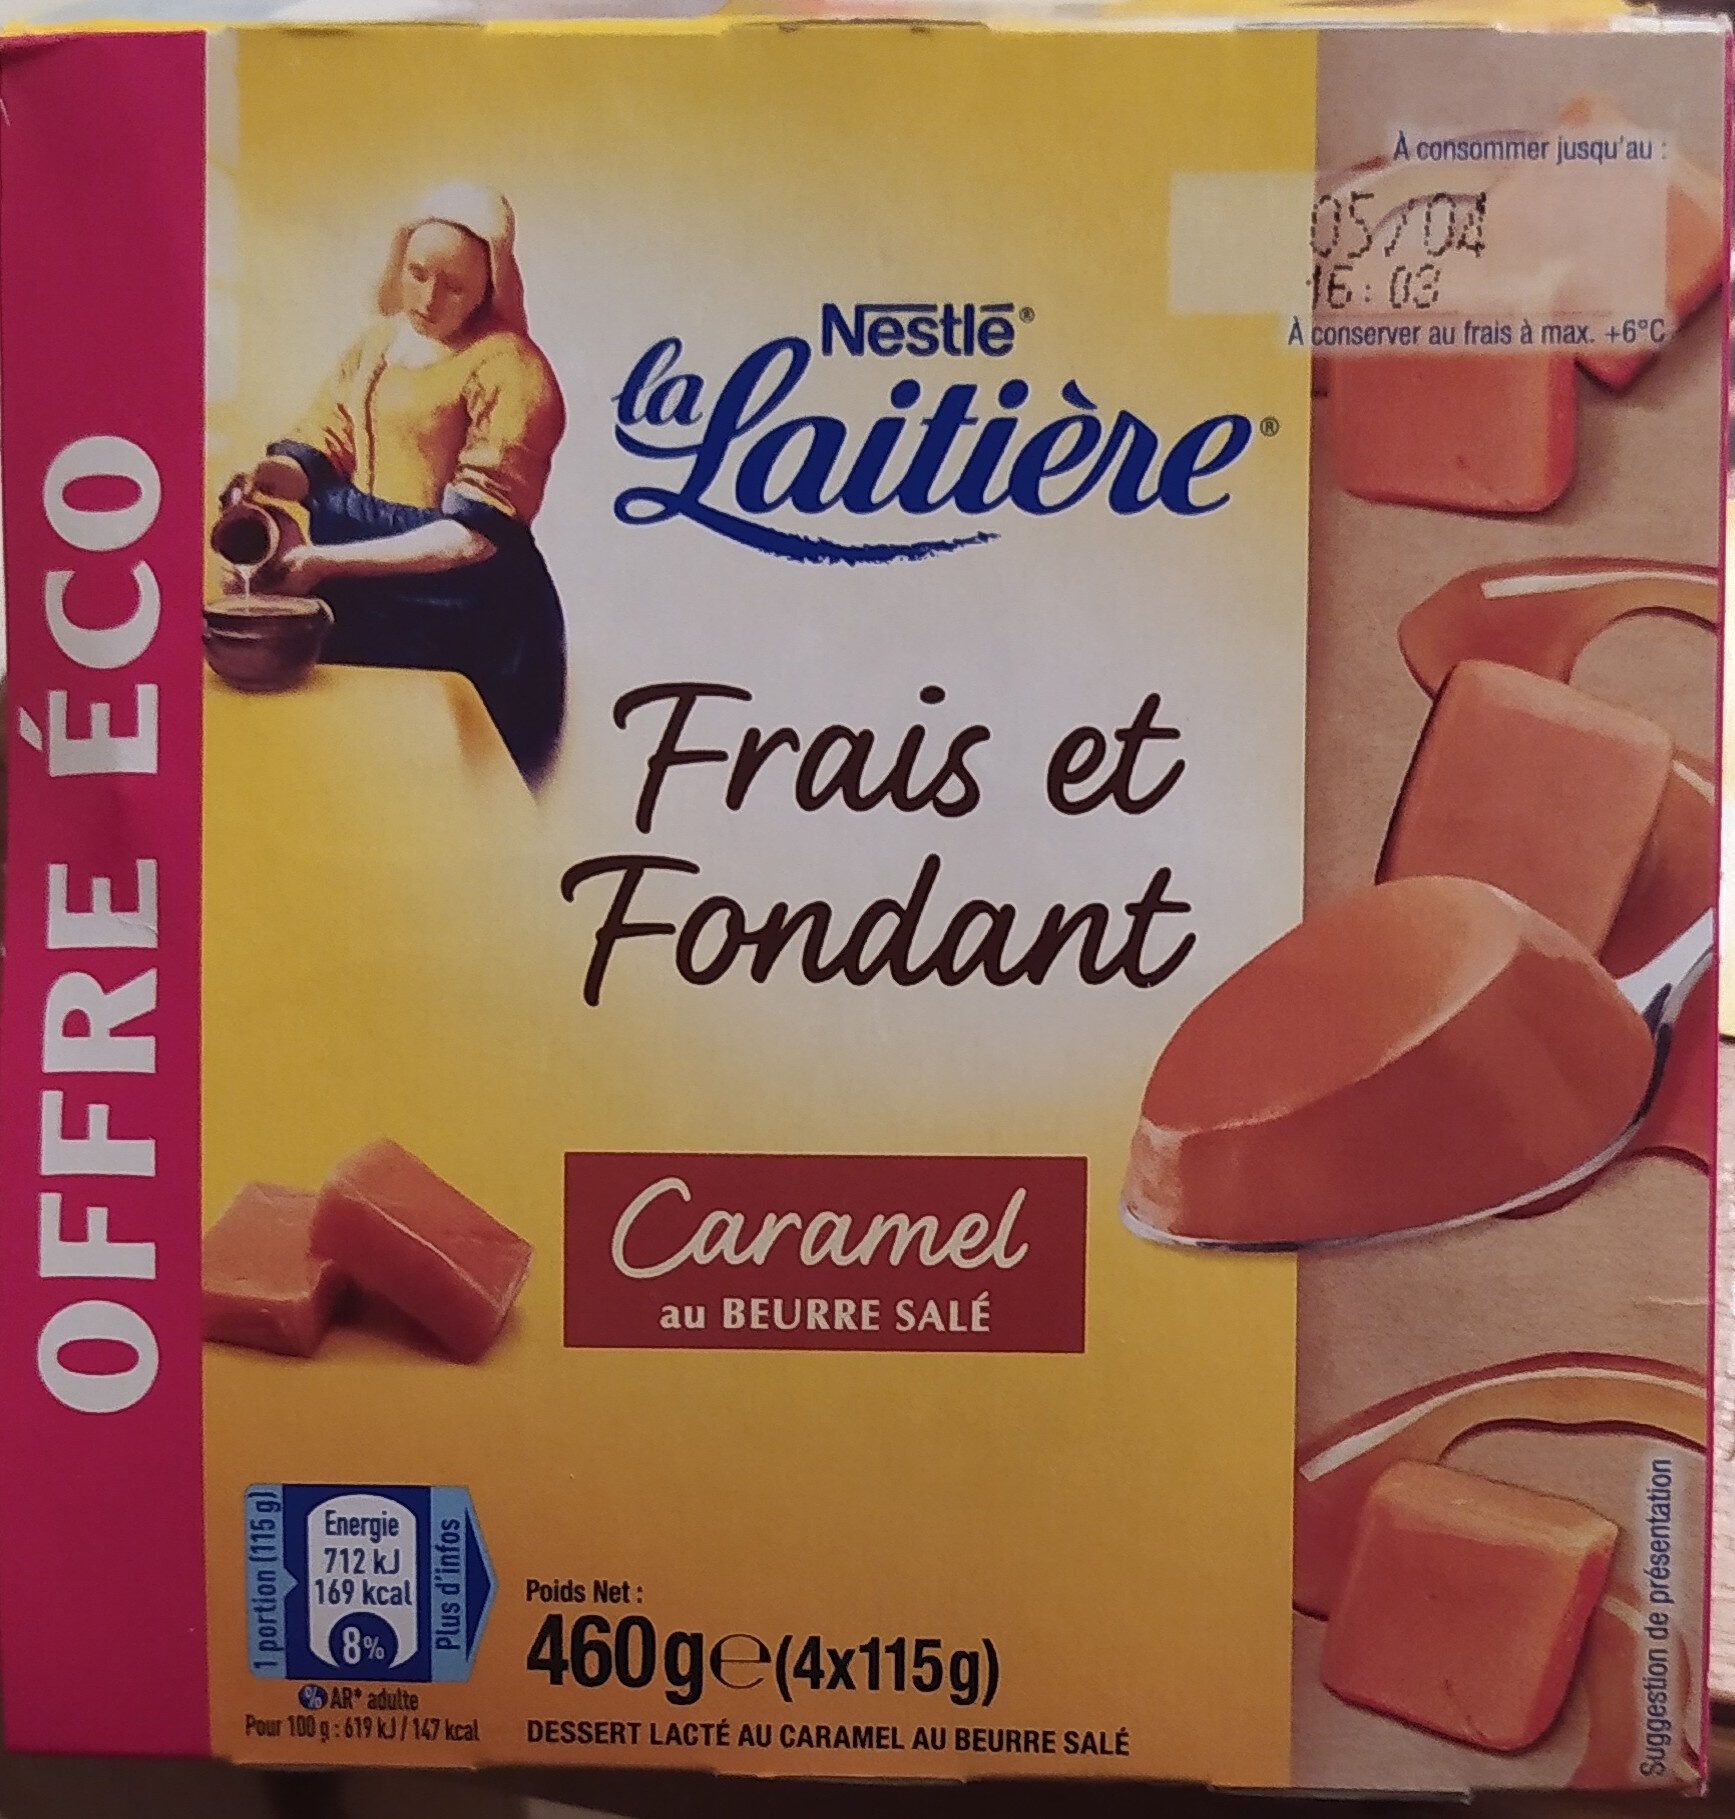 Frais et Fondant caramel au beurre salé 4 x 115 g - Product - fr